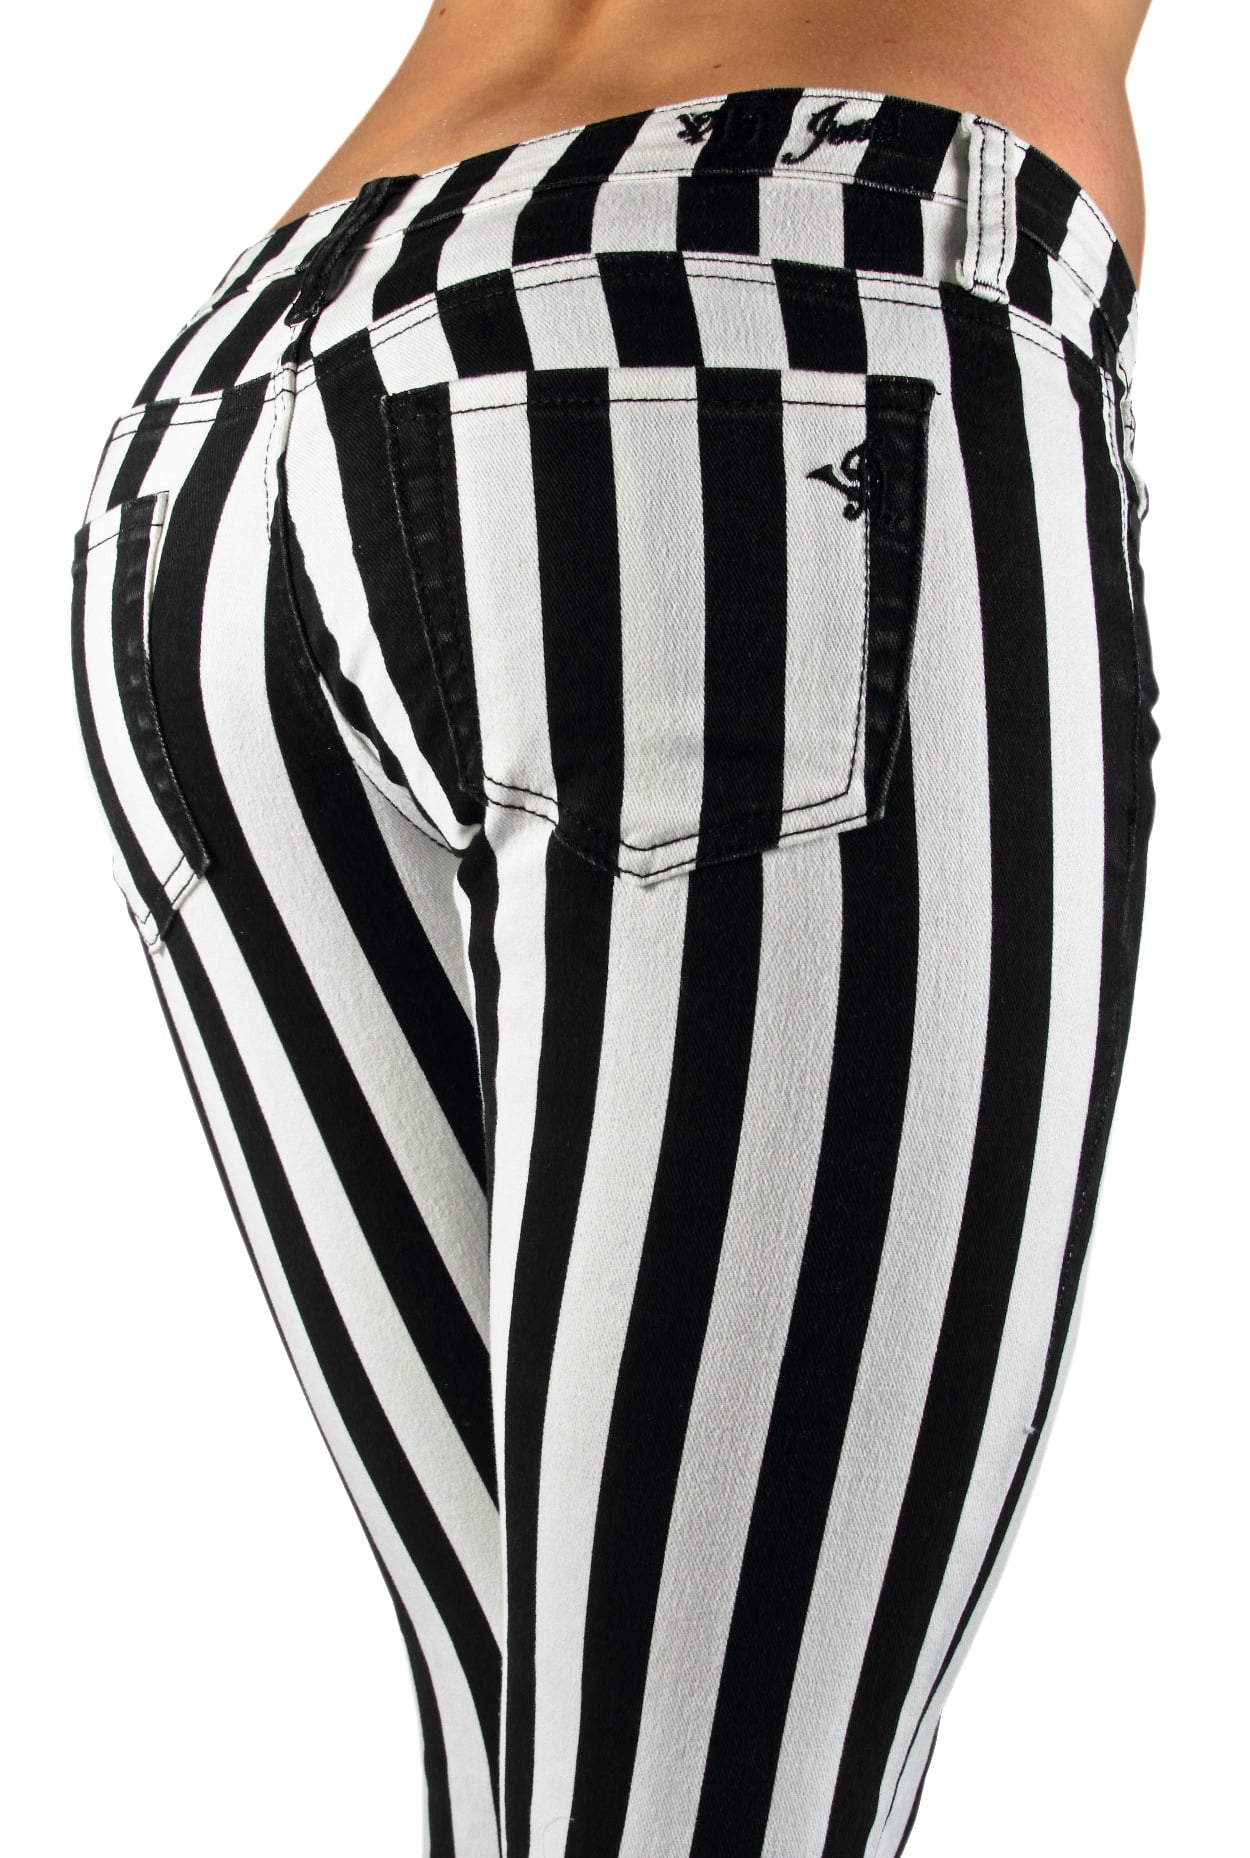 striped black white pants